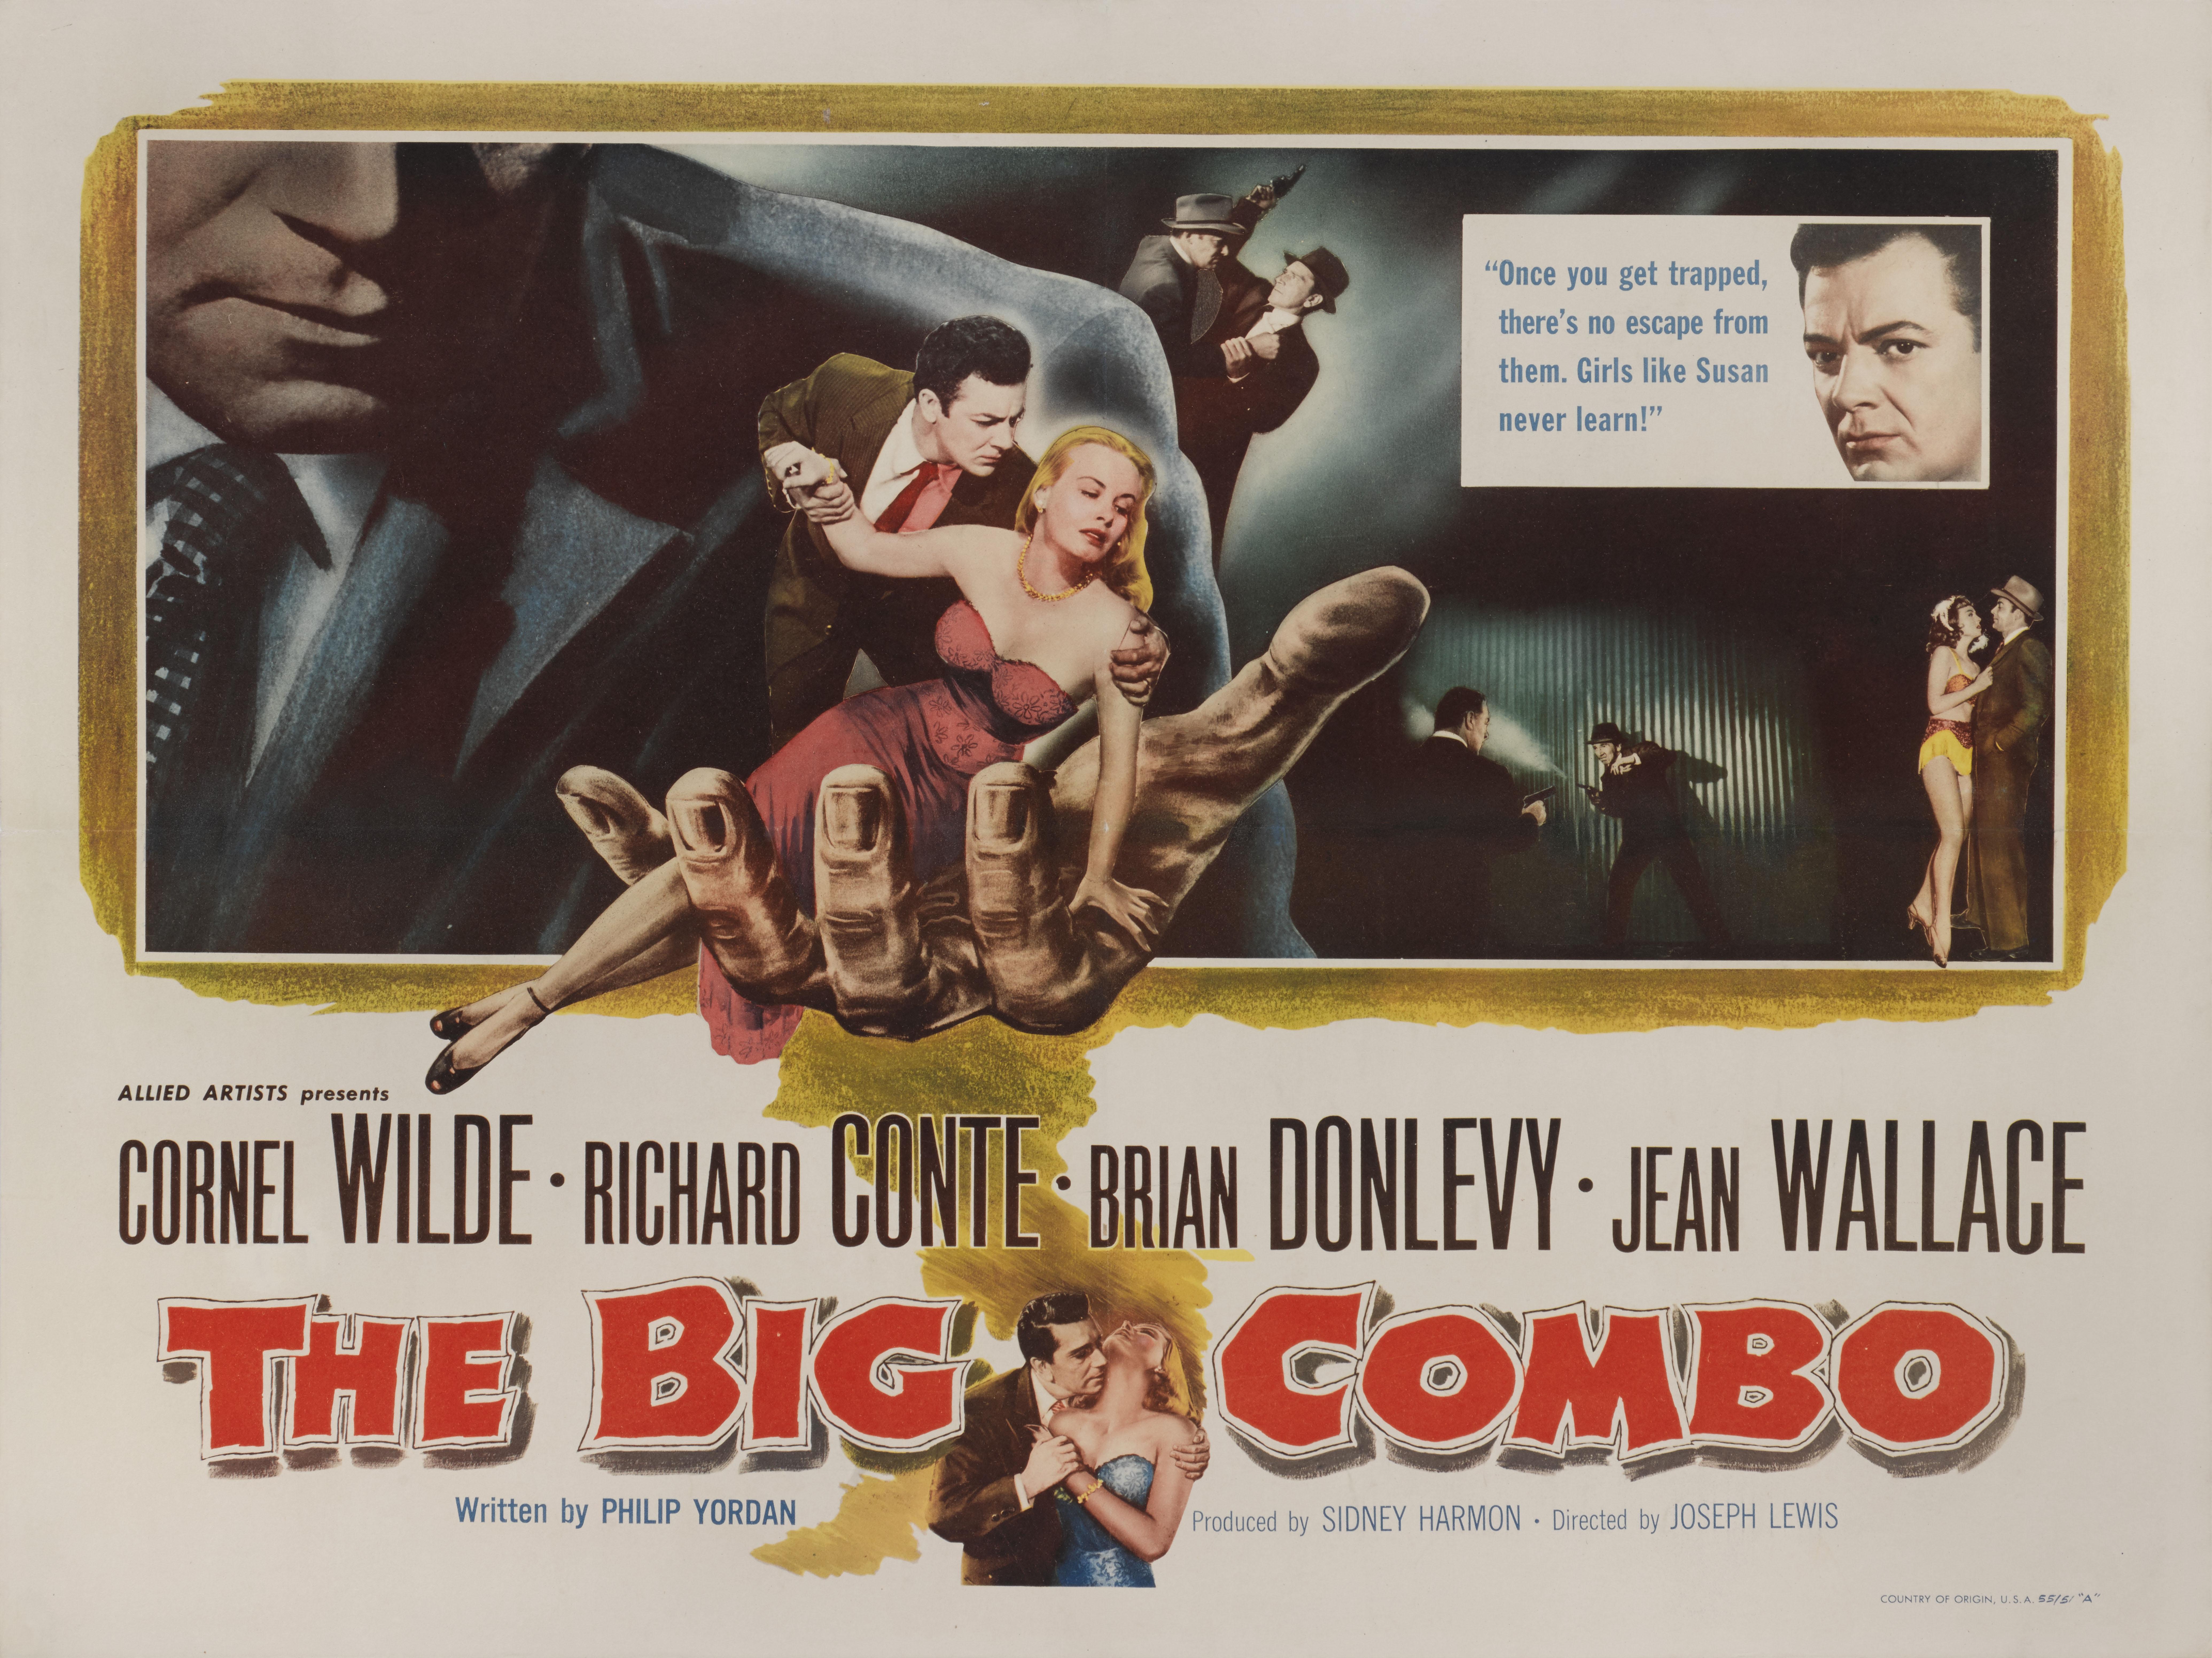 Affiche originale de style américain pour le film Noir de 1955 avec Cornel Wilde, Richard Conte et Jean Wallace. Ce film a été réalisé par Joseph H. Lewis.
Ce poster n'est pas plié et son support est en papier de conservation. Il sera expédié à